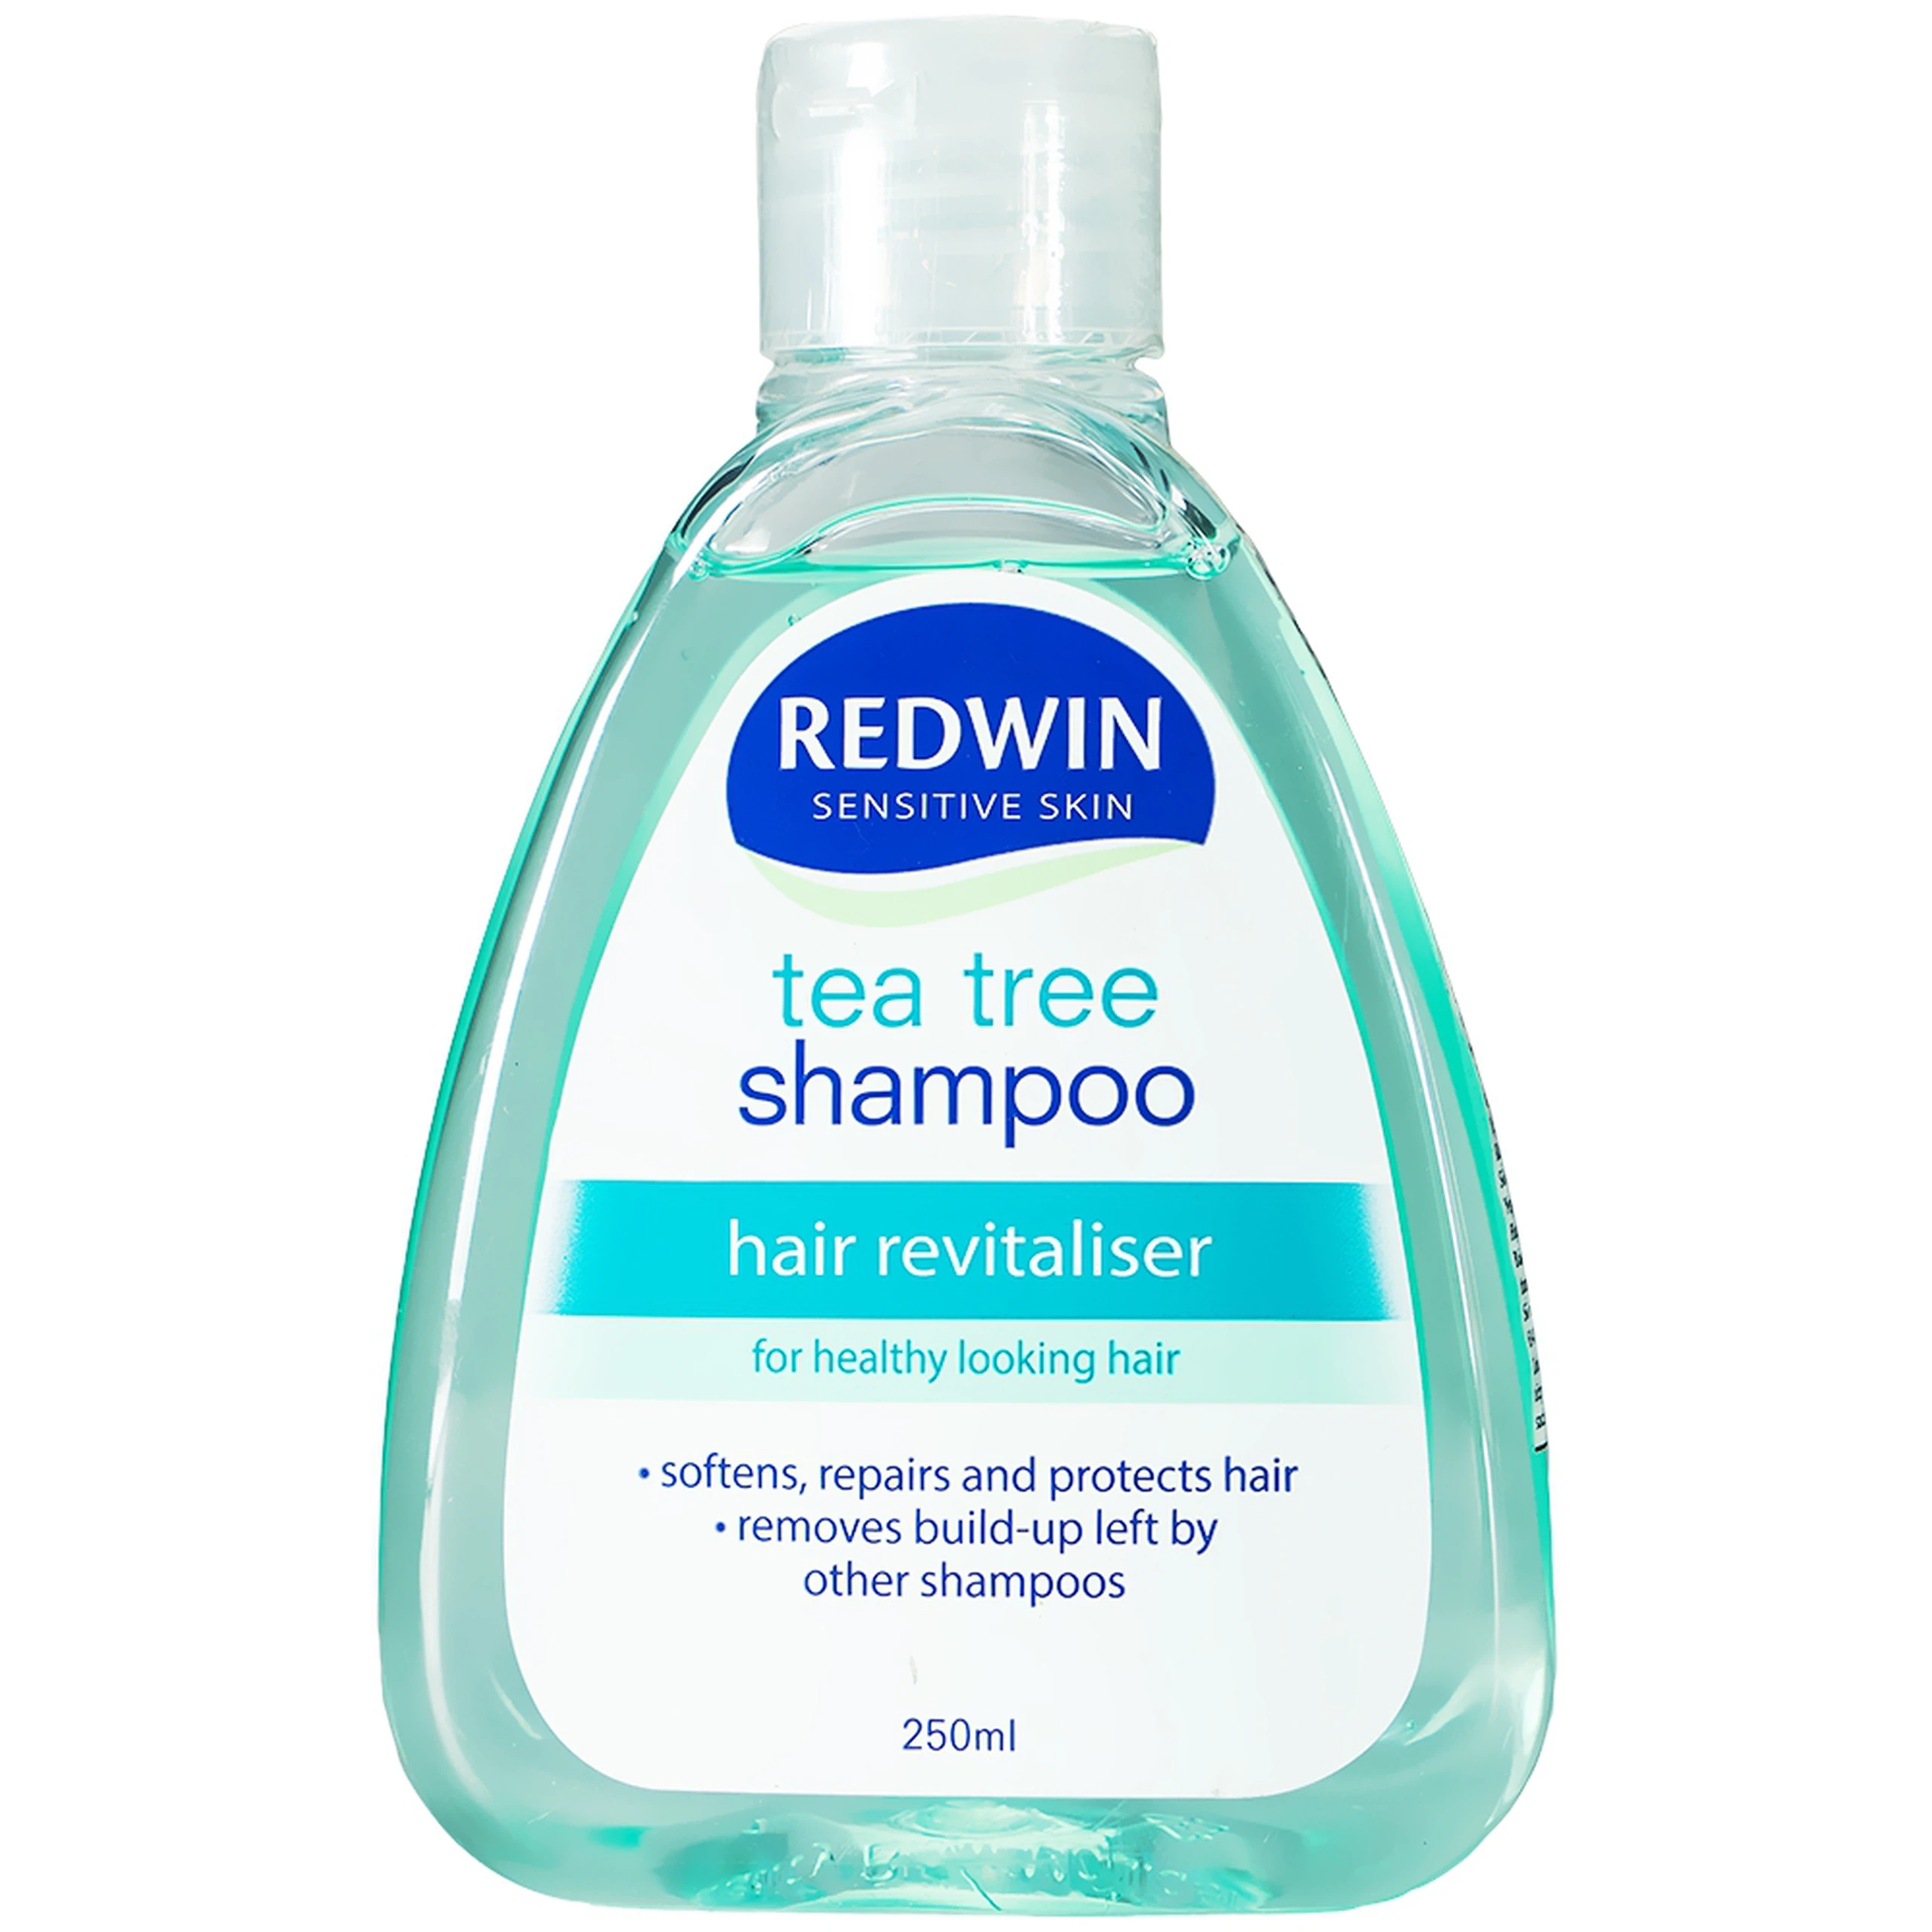 Dầu gội REDWIN Tea Tree Shampoo sạch da đầu, cân bằng độ ẩm cho da đầu bị nhiễm nấm, khô, gãy rụng (250ml)